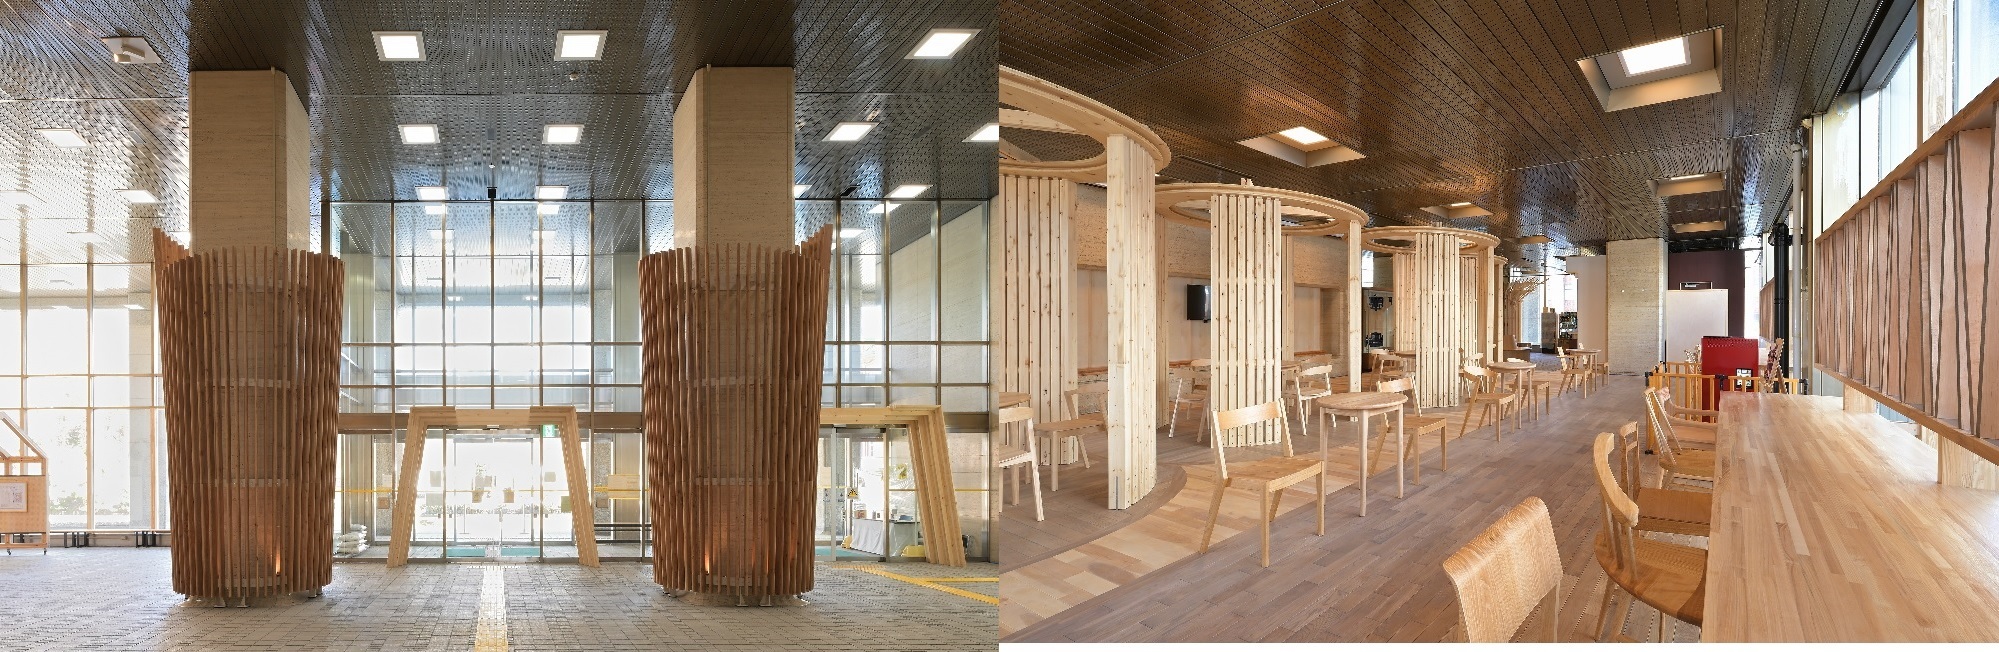 北海道庁玄関ホール木質化工事